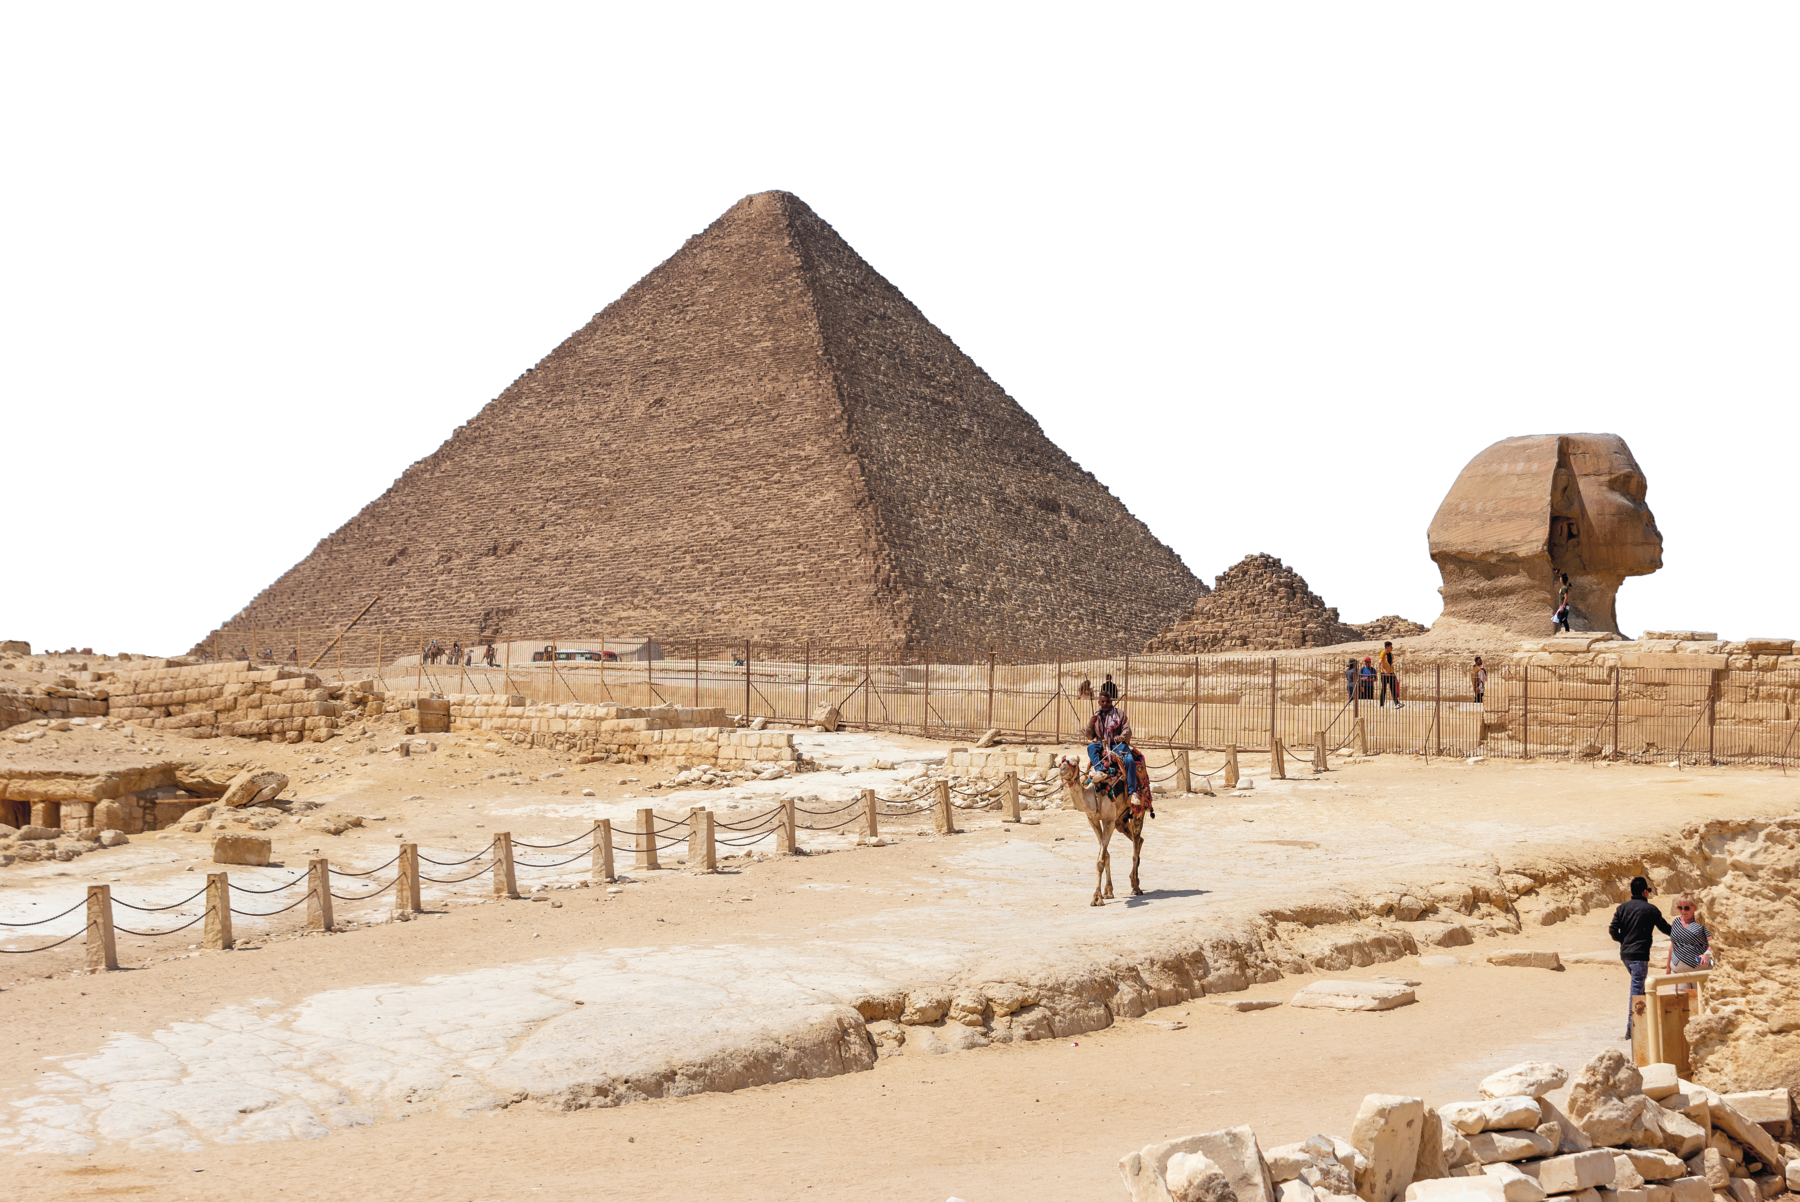 Fotografia. Vista de uma pirâmide de base quadrada e ápice triangular, e ao lado, uma esfinge em pedra, com cabeça humana. A área está cercada. Há um caminho pelo qual um homem sobre um camelo atravessa.